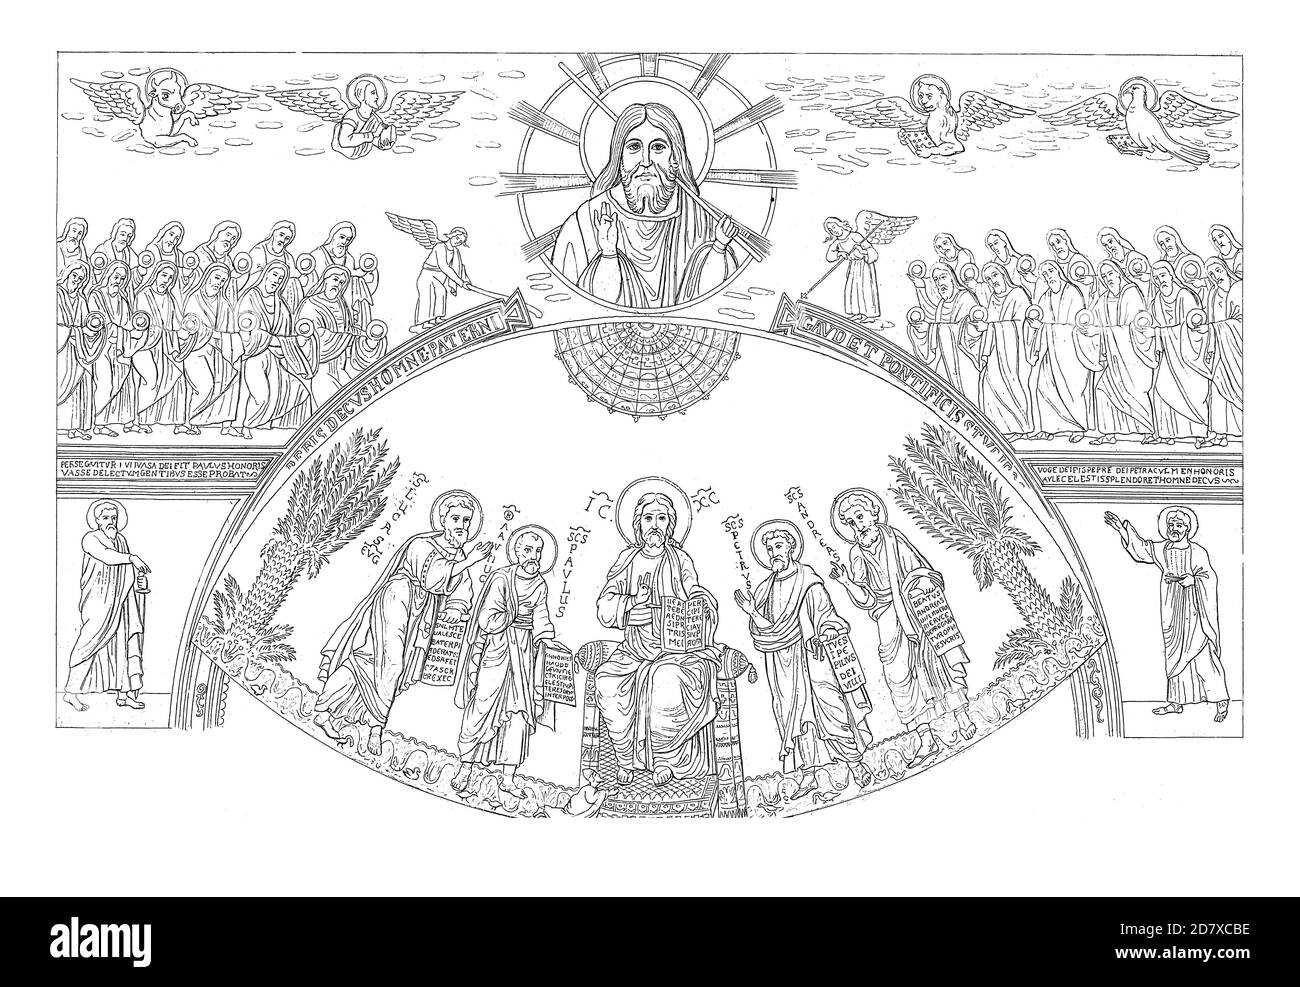 Stich aus dem 19. Jahrhundert mit einem Apsis-Mosaik aus der Basilika St. Paul in Rom, Italien. Illustration veröffentlicht in Systematischer Bilder Atlas - B Stockfoto